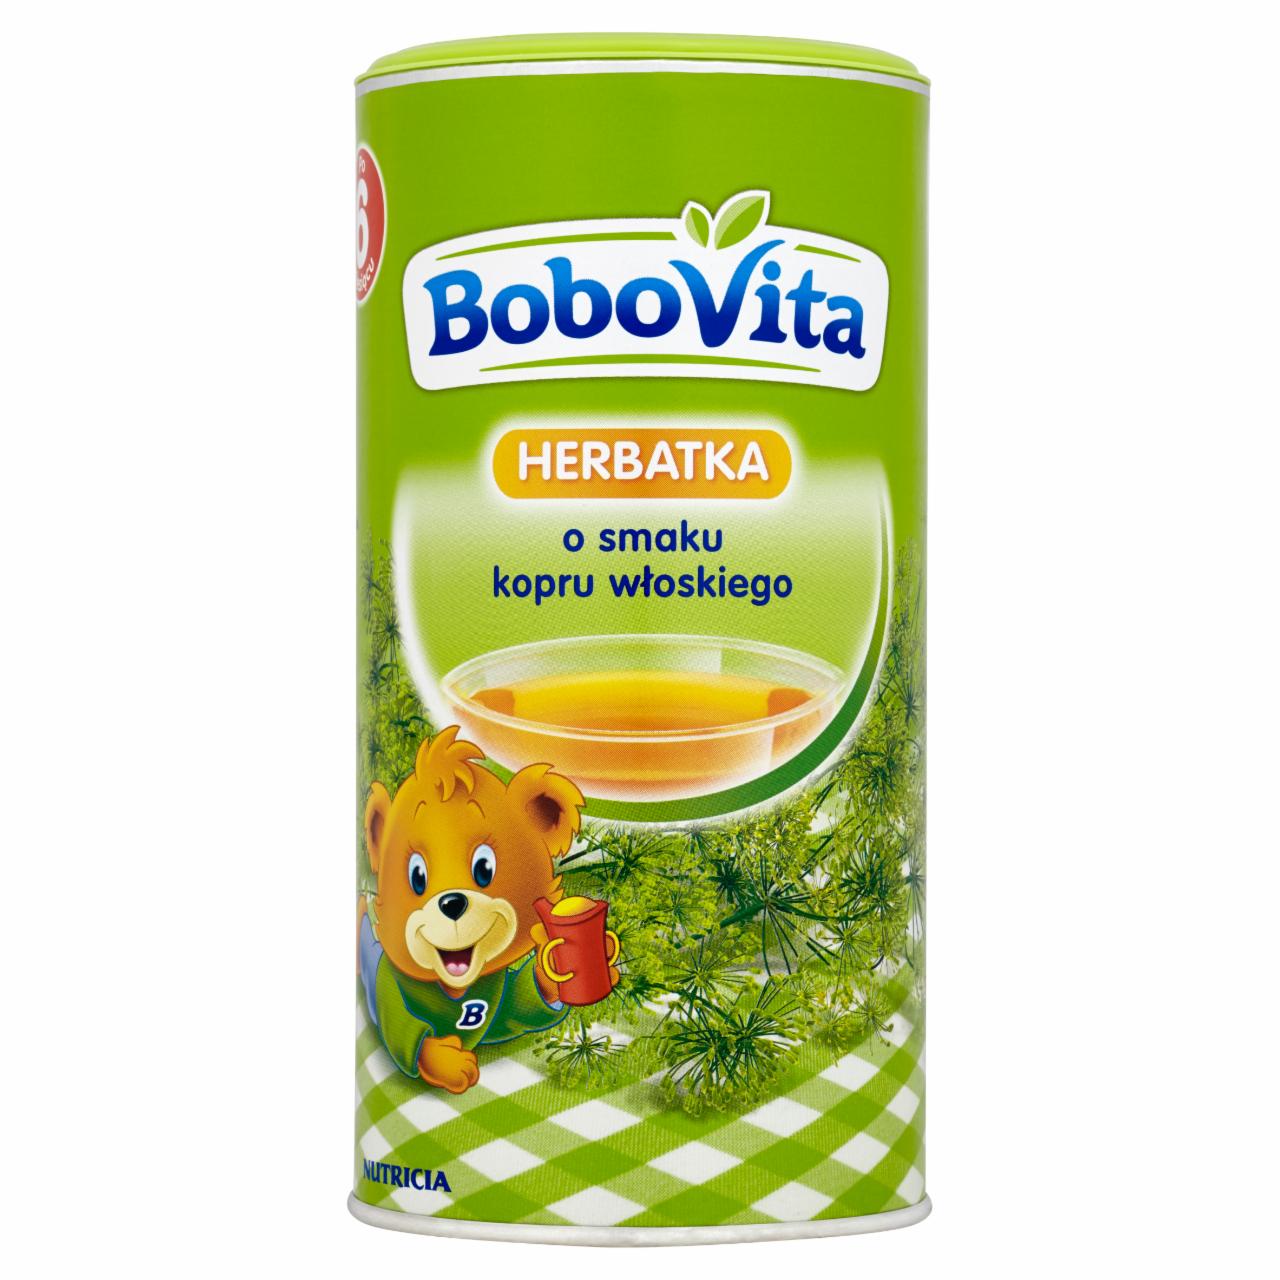 Zdjęcia - BoboVita Herbatka o smaku kopru włoskiego po 6 miesiącu 200 g